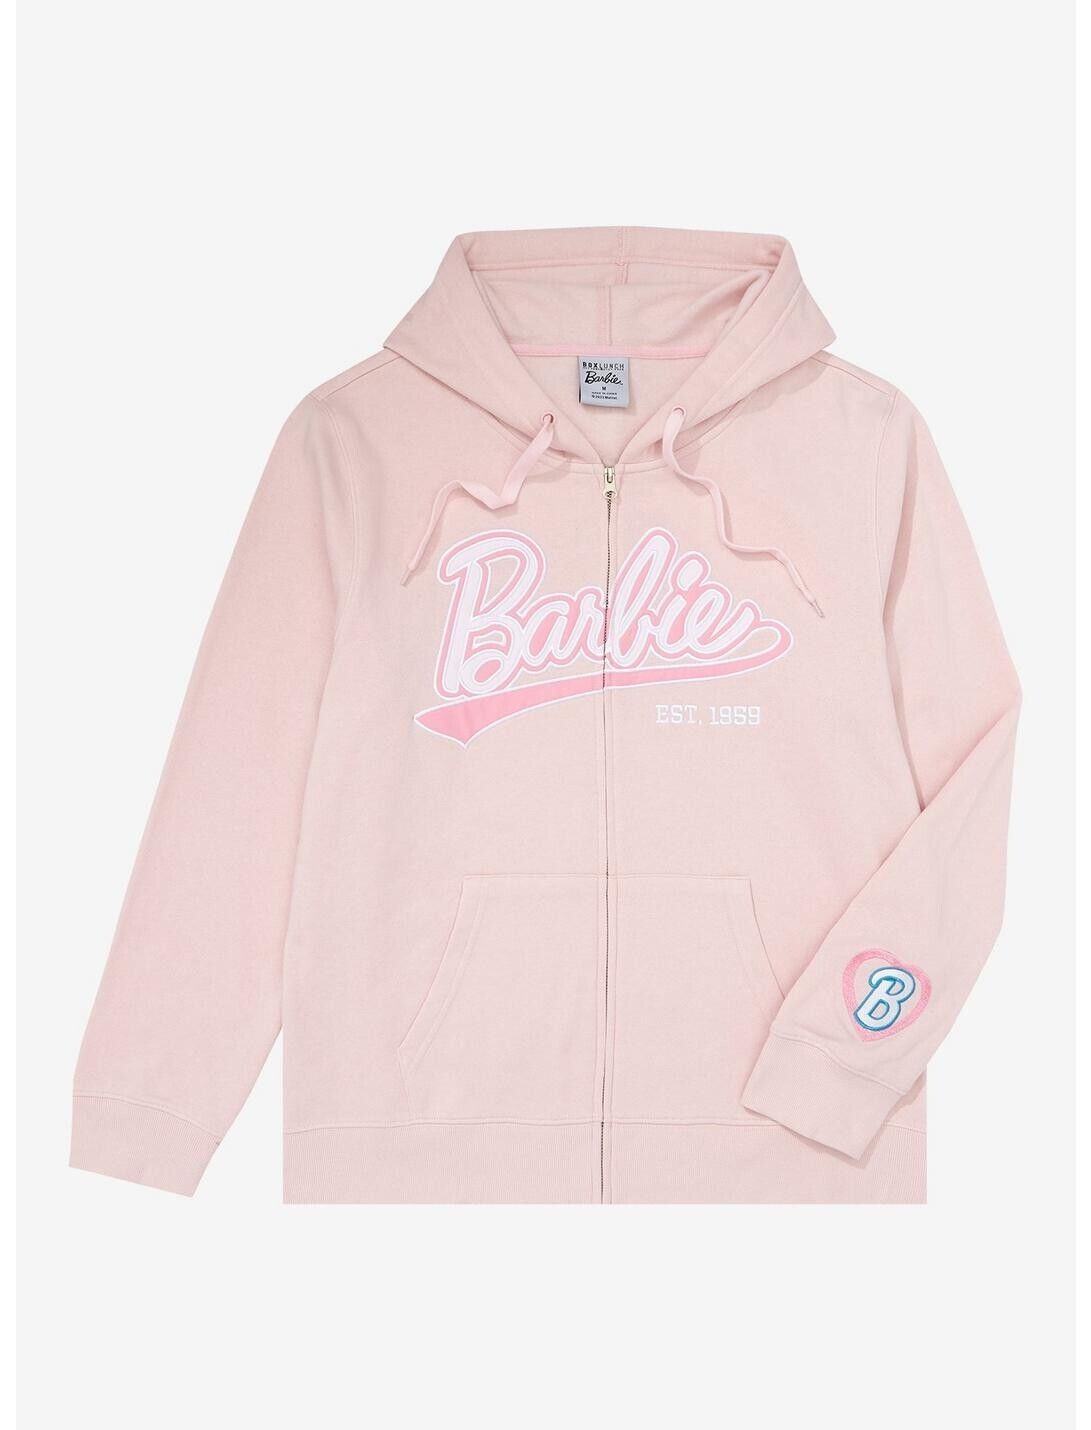 Barbie Full Zip Hoodie Jacket Soft Pink Raised Barbie Script Unisex Size Large